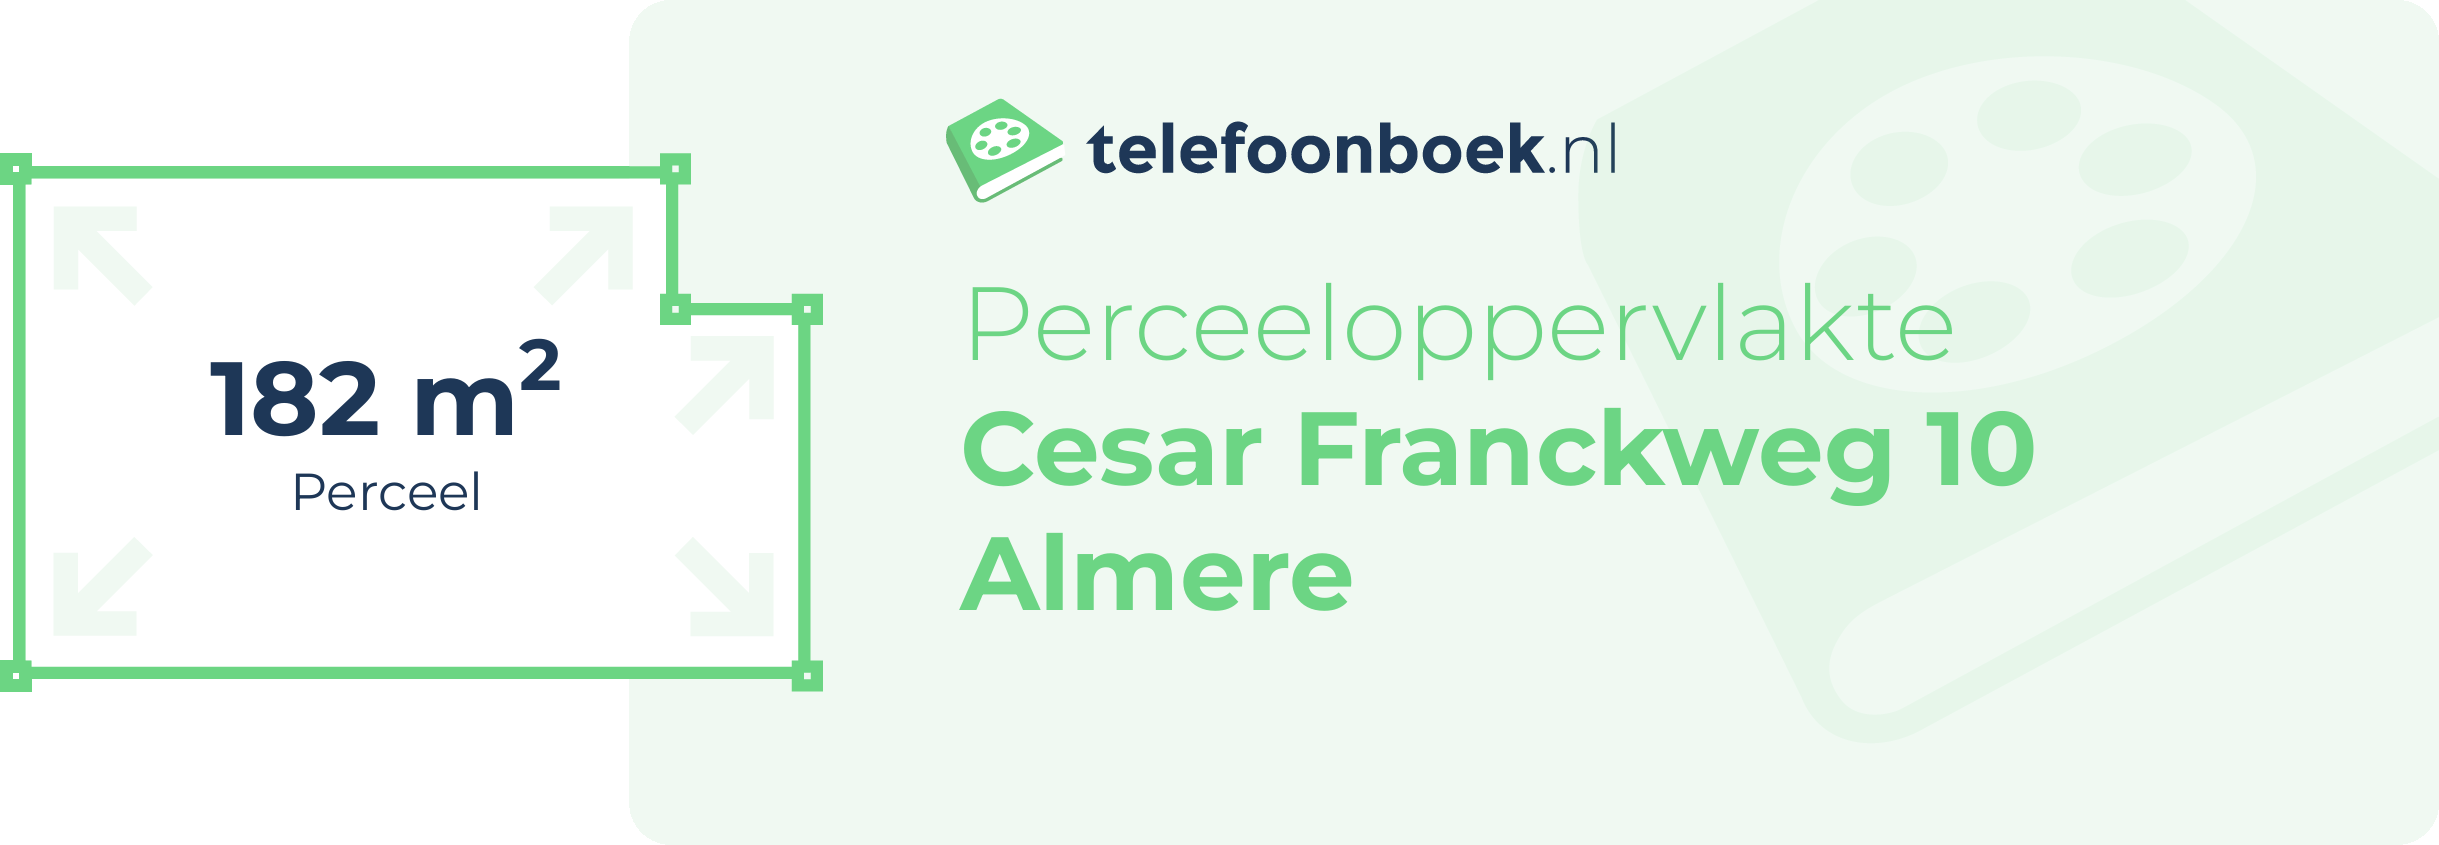 Perceeloppervlakte Cesar Franckweg 10 Almere